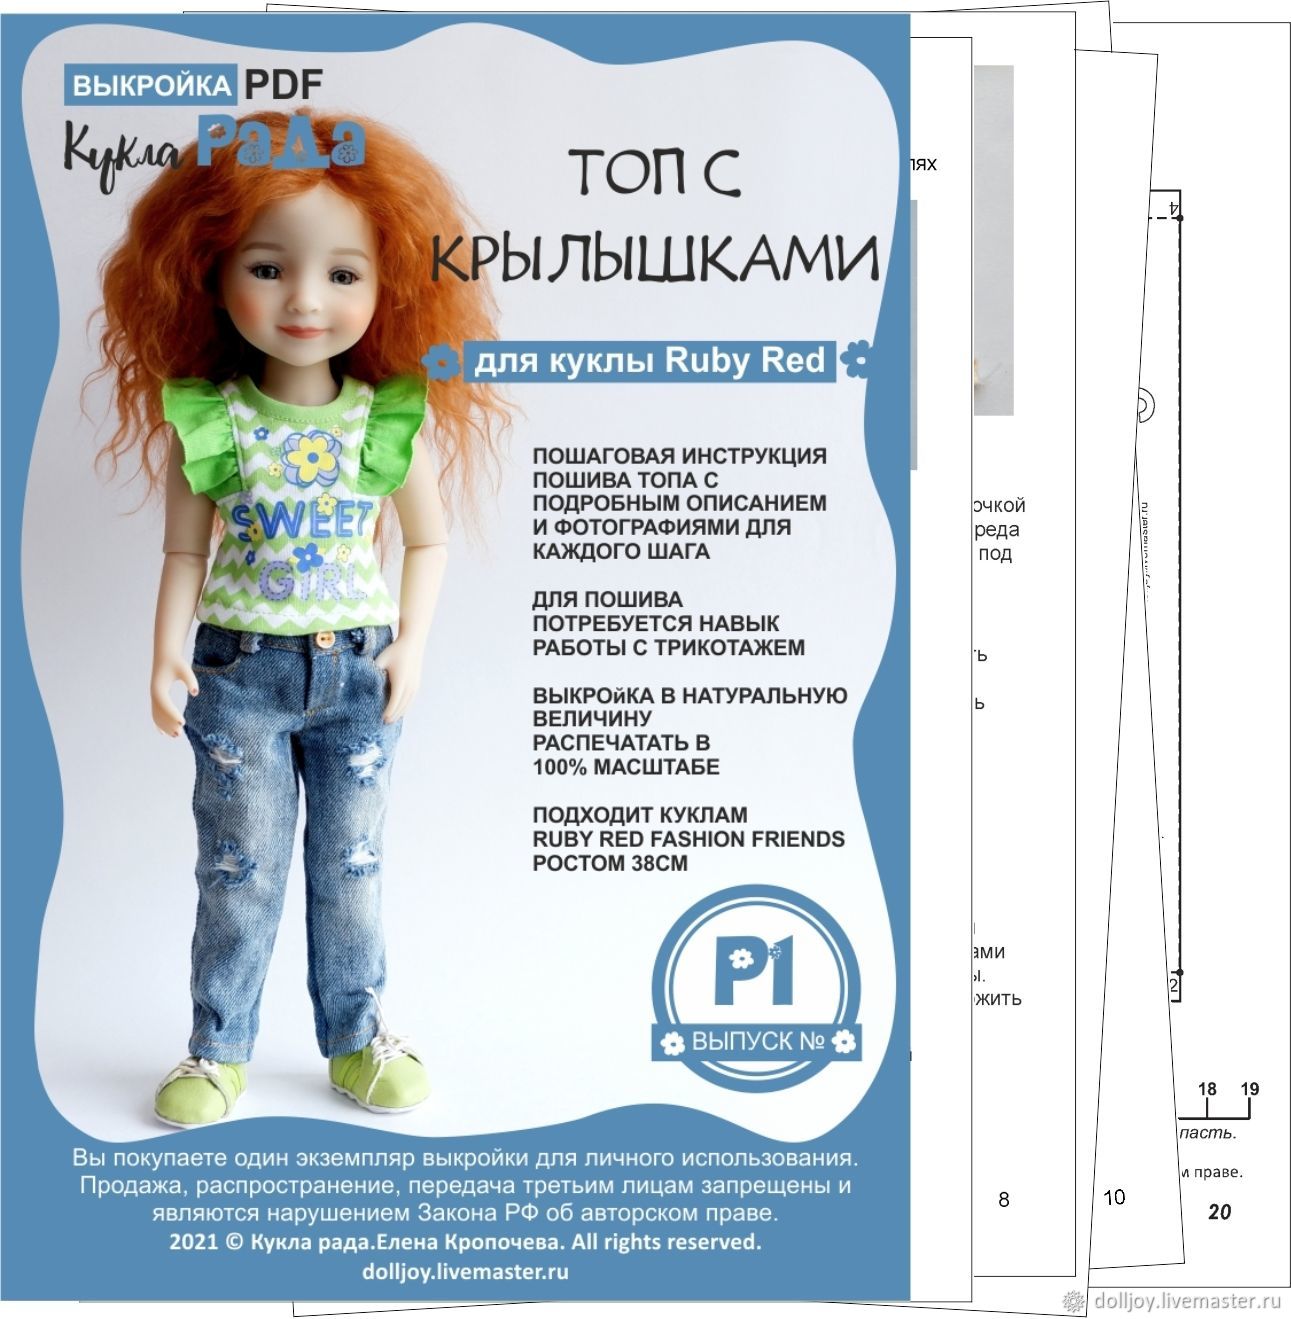 МК куклы в стиле Татьяны Коннэ: выкройка в натуральную величину (6 видео)